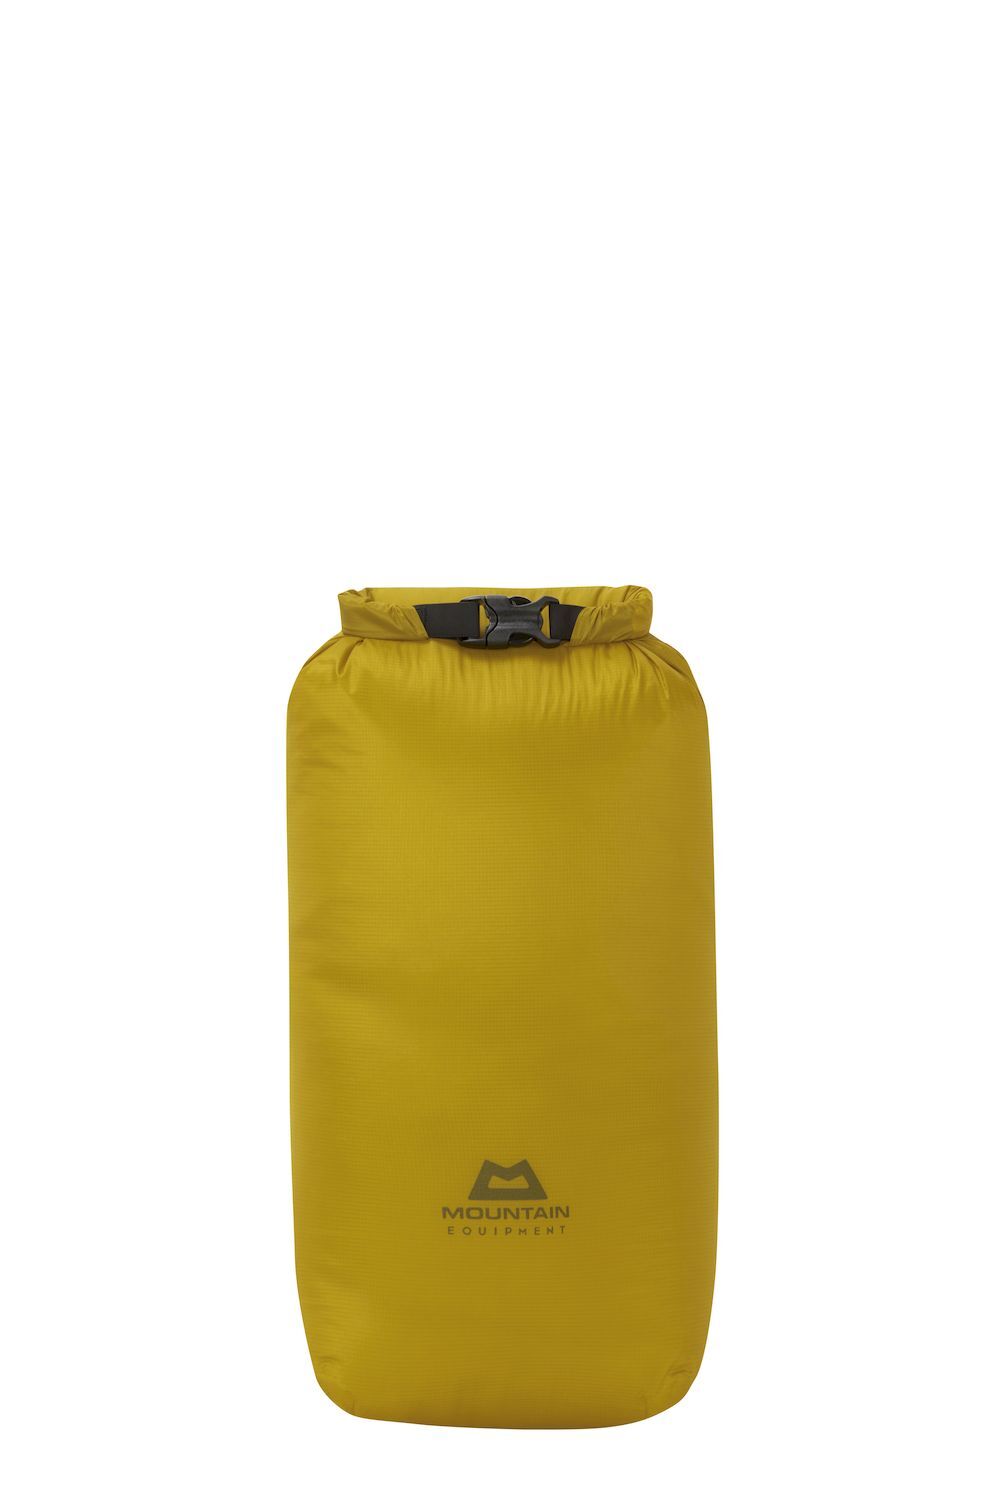 Mountain Equipment Lightweight Drybag 20L - Waterdichte tas